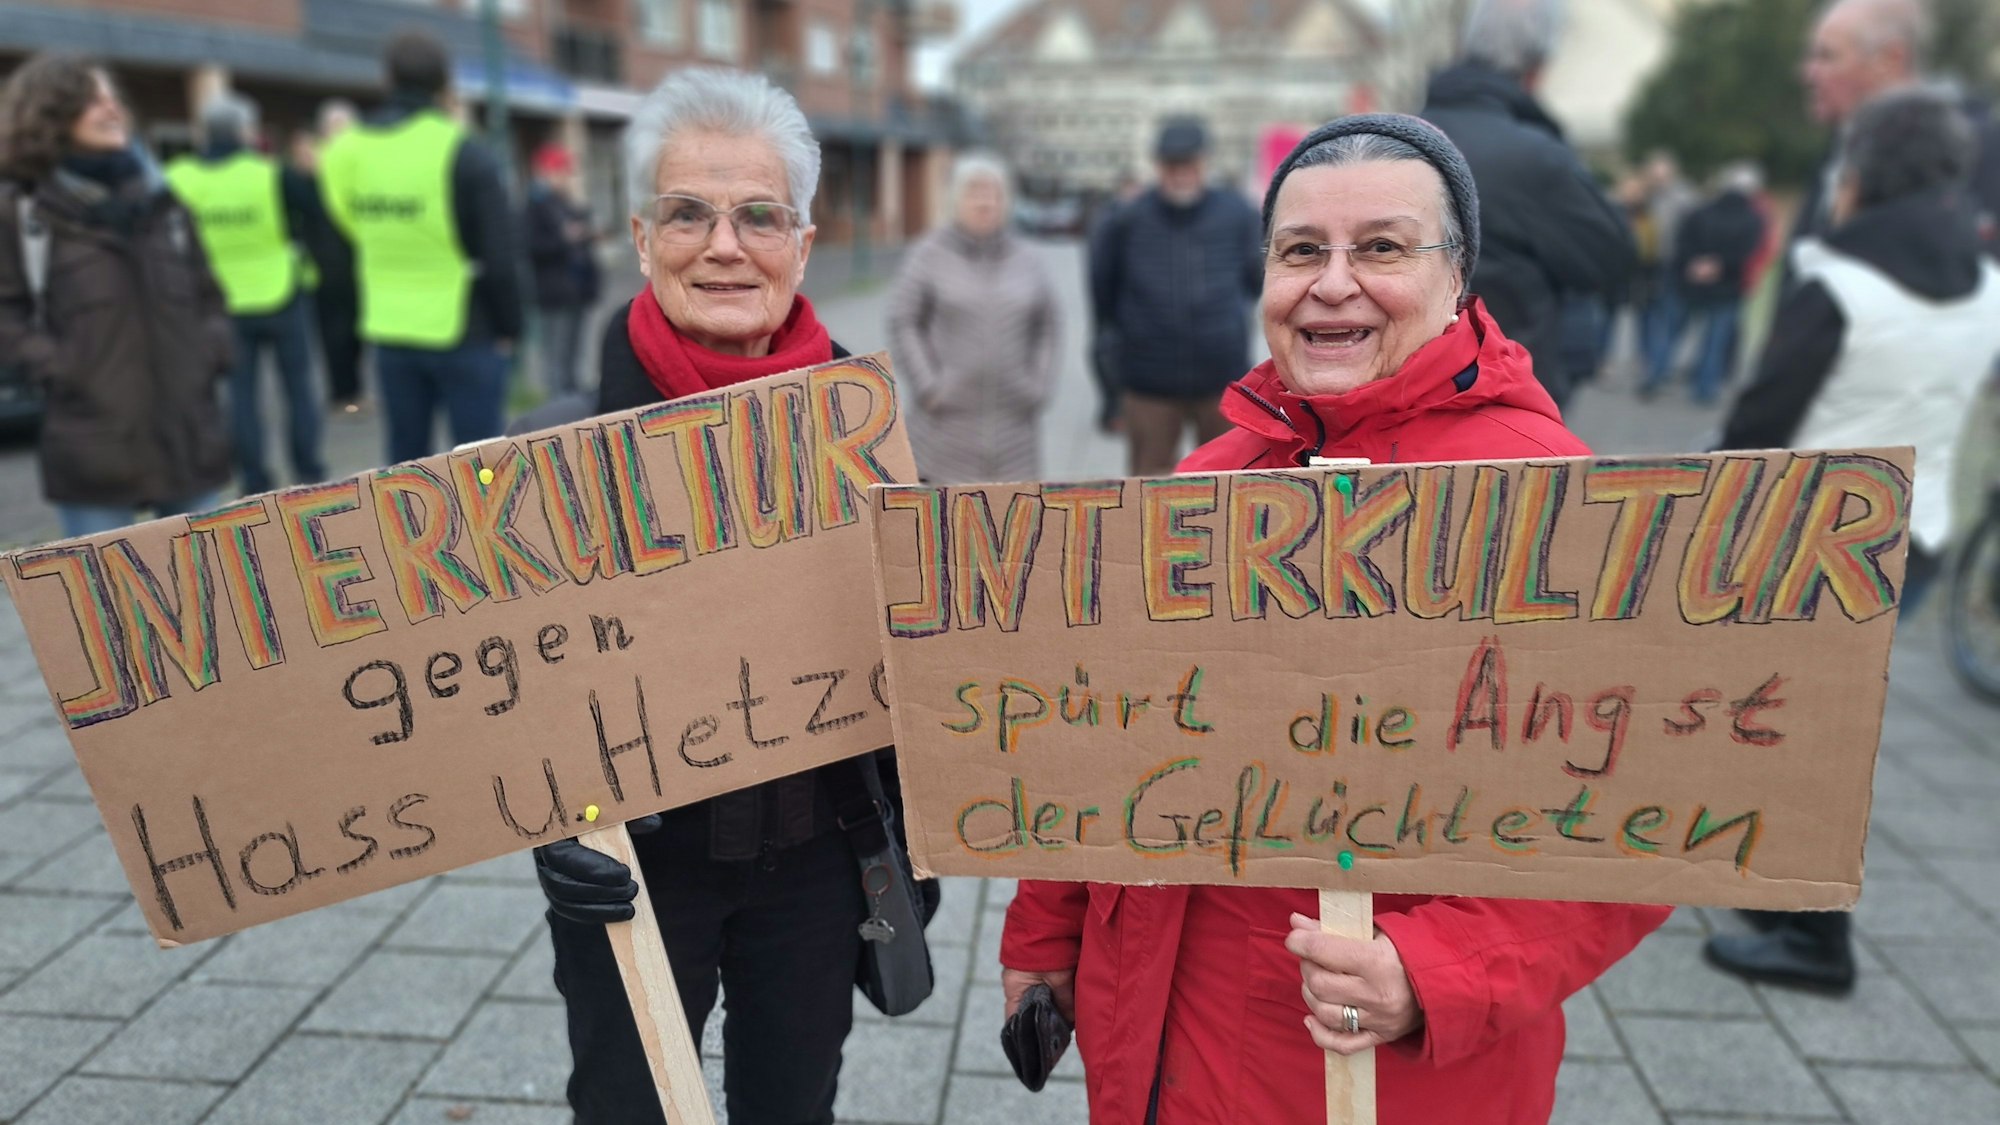 „Interkultur gegen Hass und Hetze“ und „Interkultur spürt die Angst der Geflüchteten“ steht auf den Plakaten, mit denen sich zwei Unterstützerinnen der Flüchtlingshilfe Interkultur an der Demonstration beteiligen.